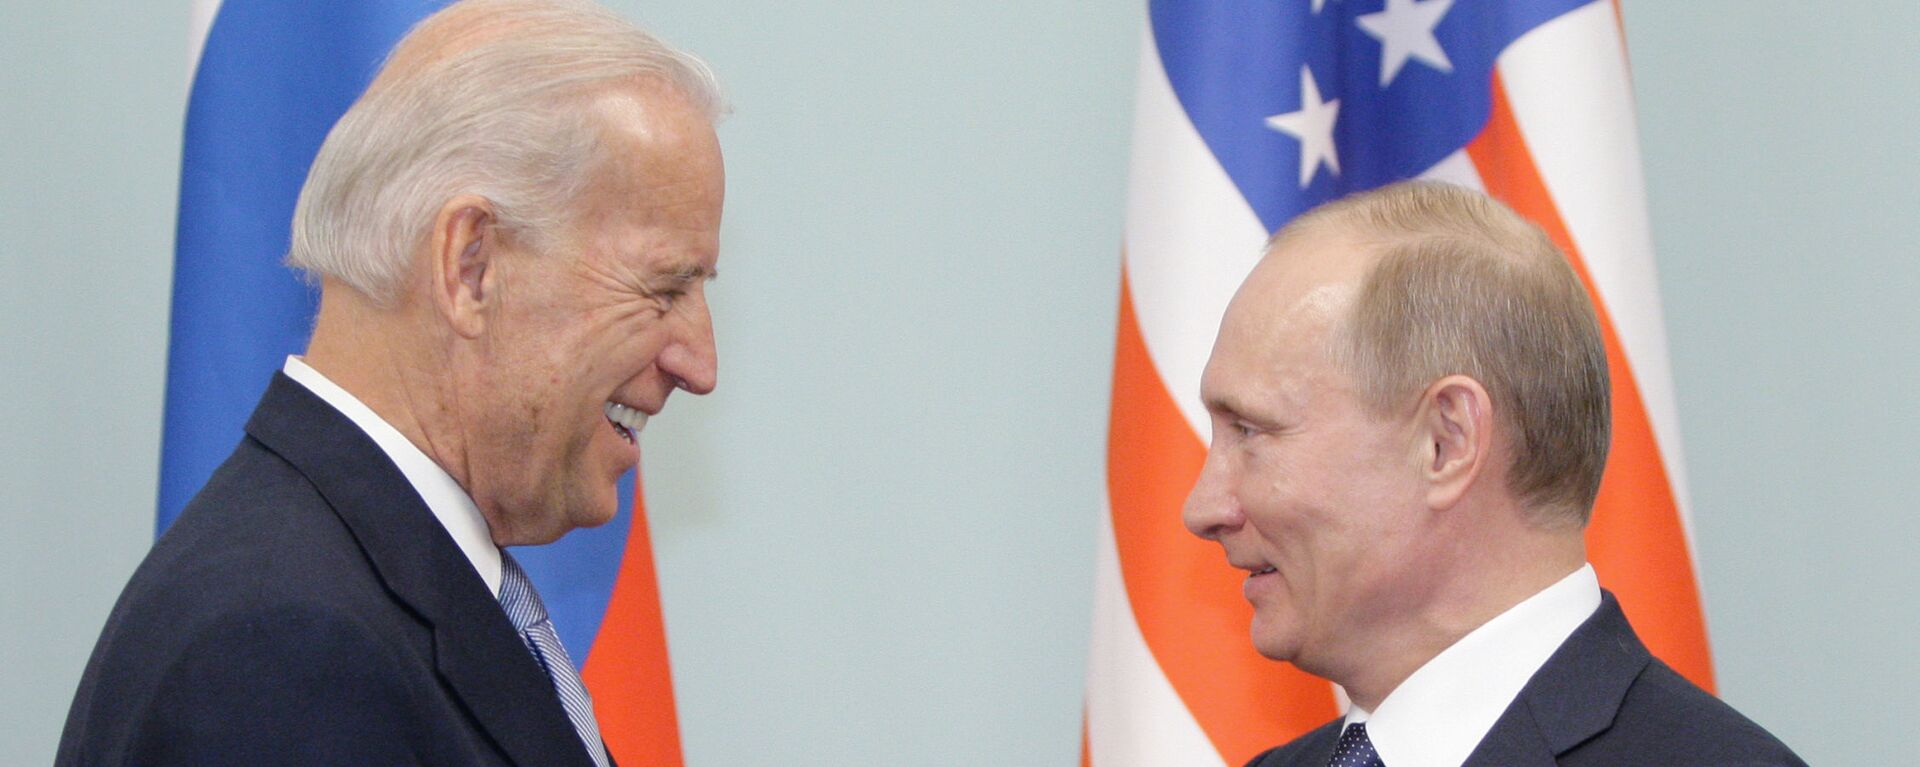 Vladimira Putina un Džozefa Baidena tikšanās Maskavā 2011. gadā - Sputnik Latvija, 1920, 05.06.2021